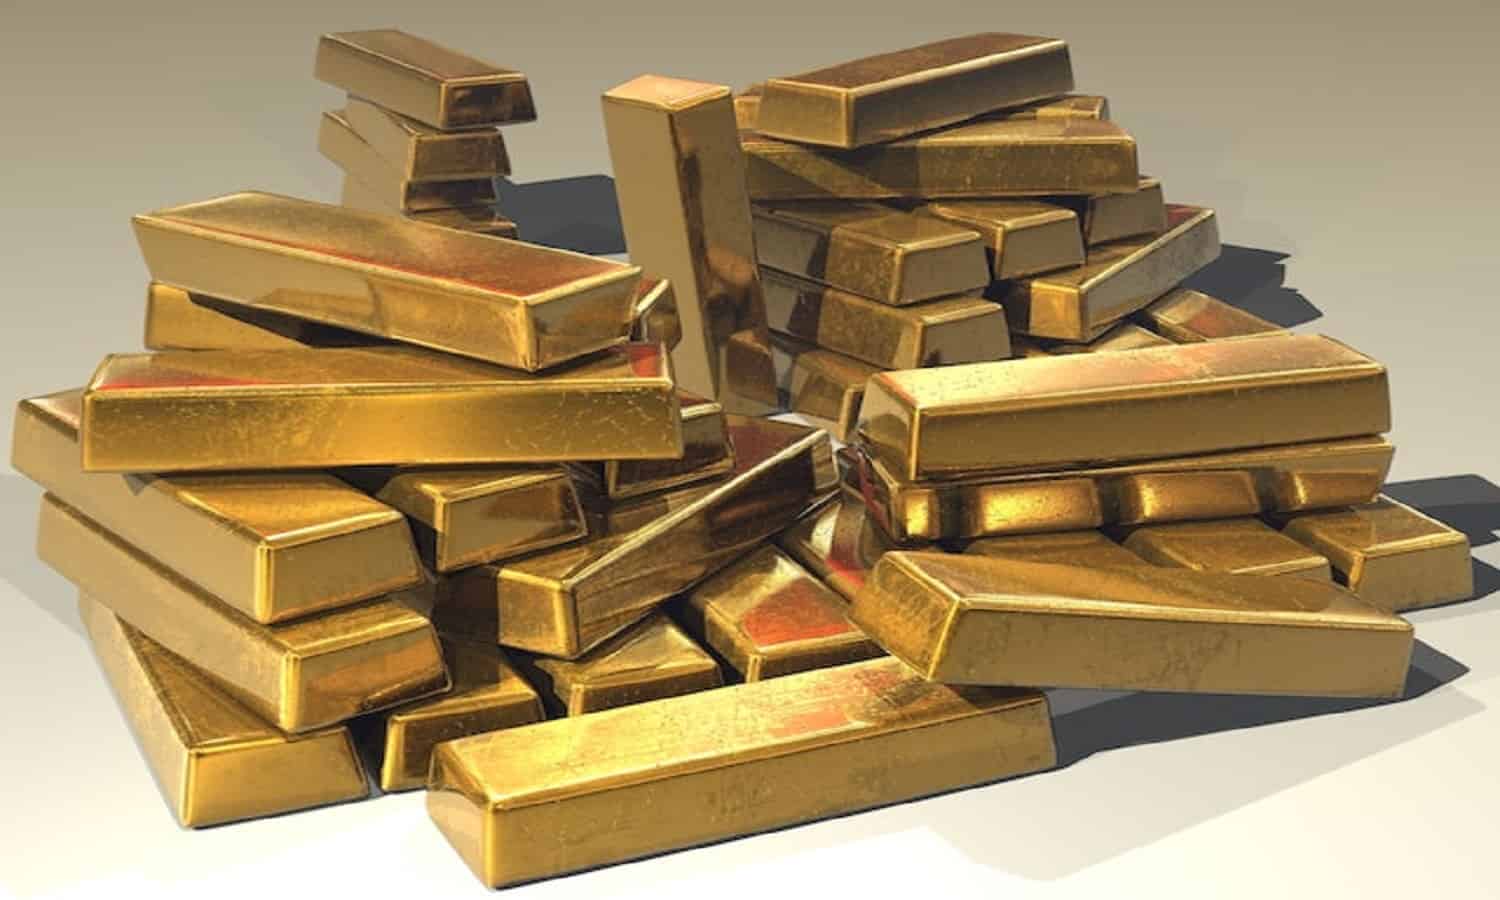 الضرائب توضح أصناف الذهب المعفاة من الضريبة الجمركية لمدة 6 أشهر
